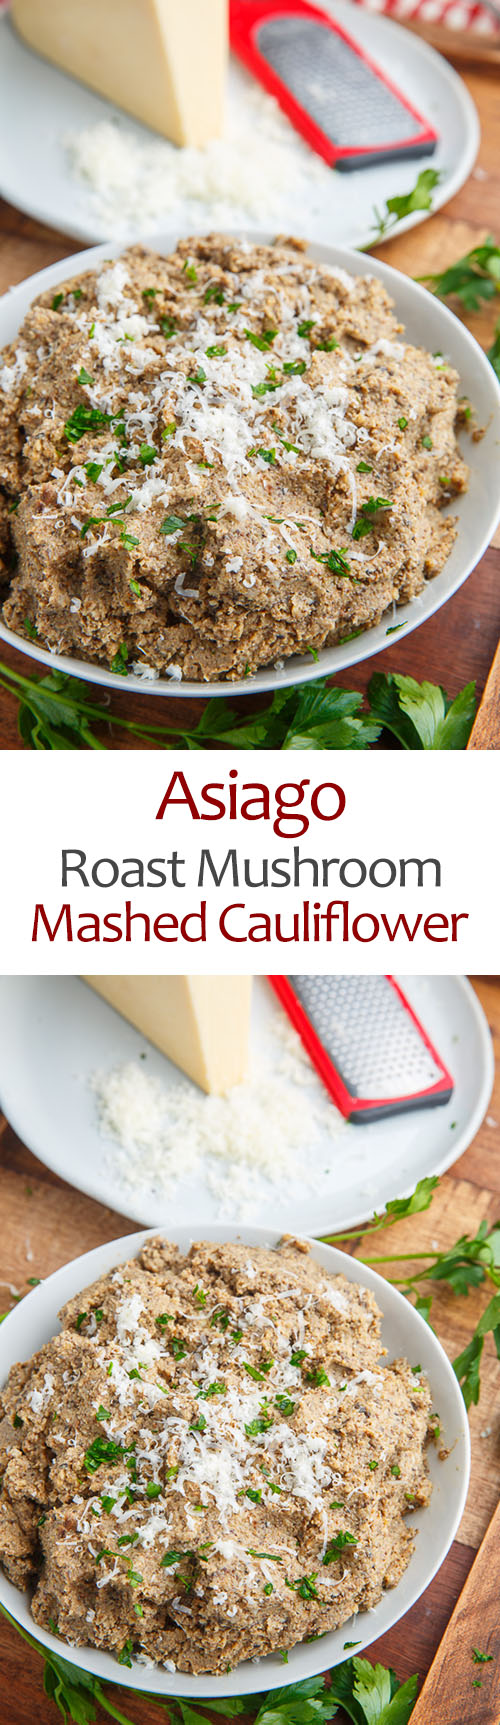 Asiago Roasted Mushroom Mashed Cauliflower